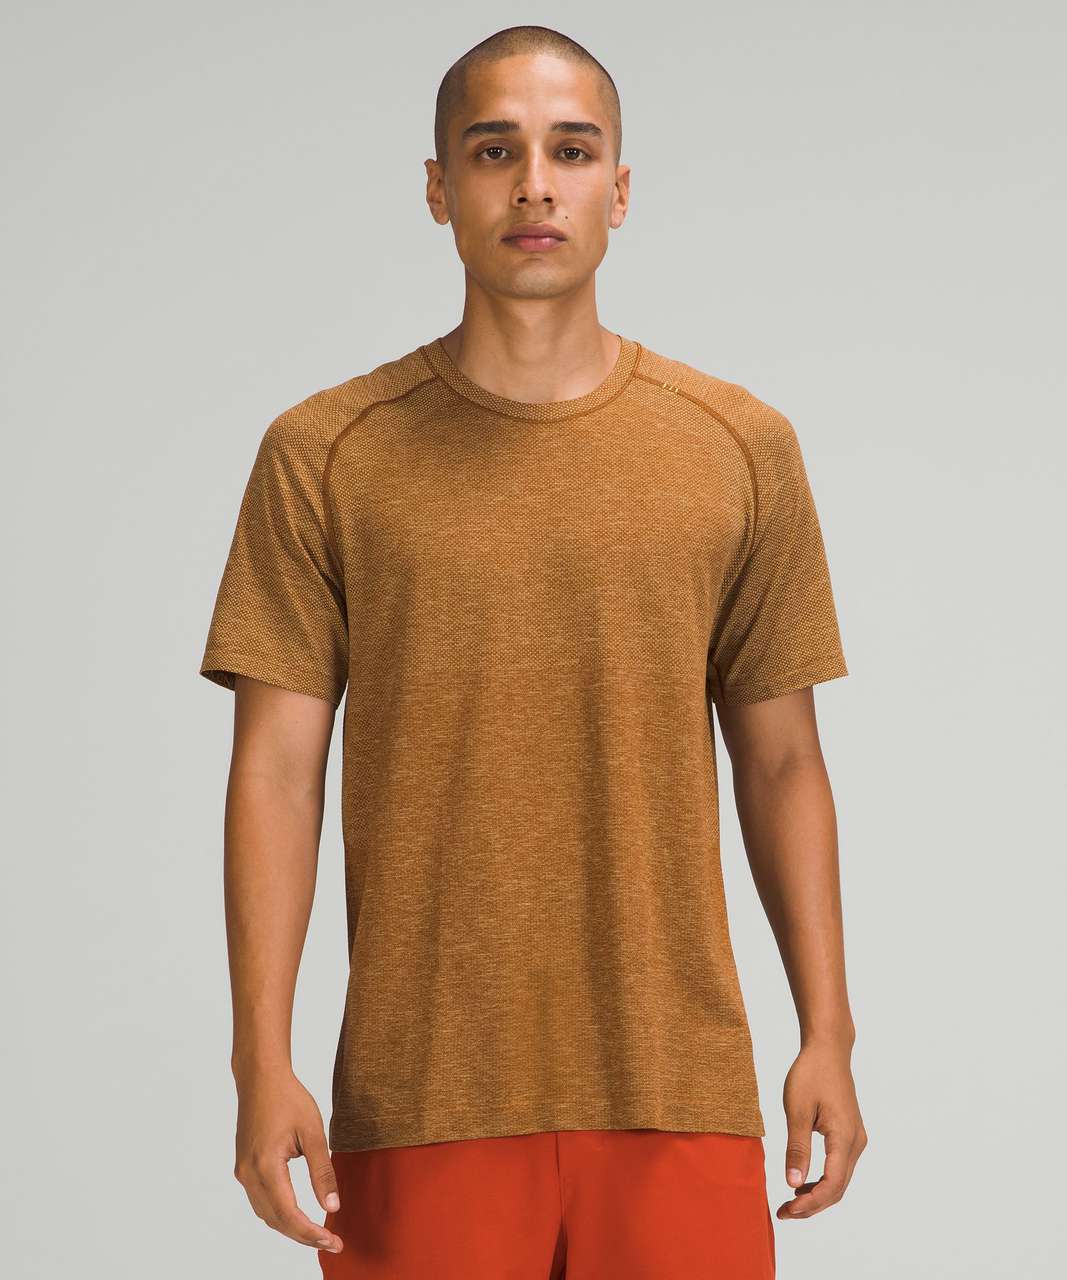 Lululemon Metal Vent Tech Short Sleeve Shirt 2.0 - Dew Green / Copper Brown